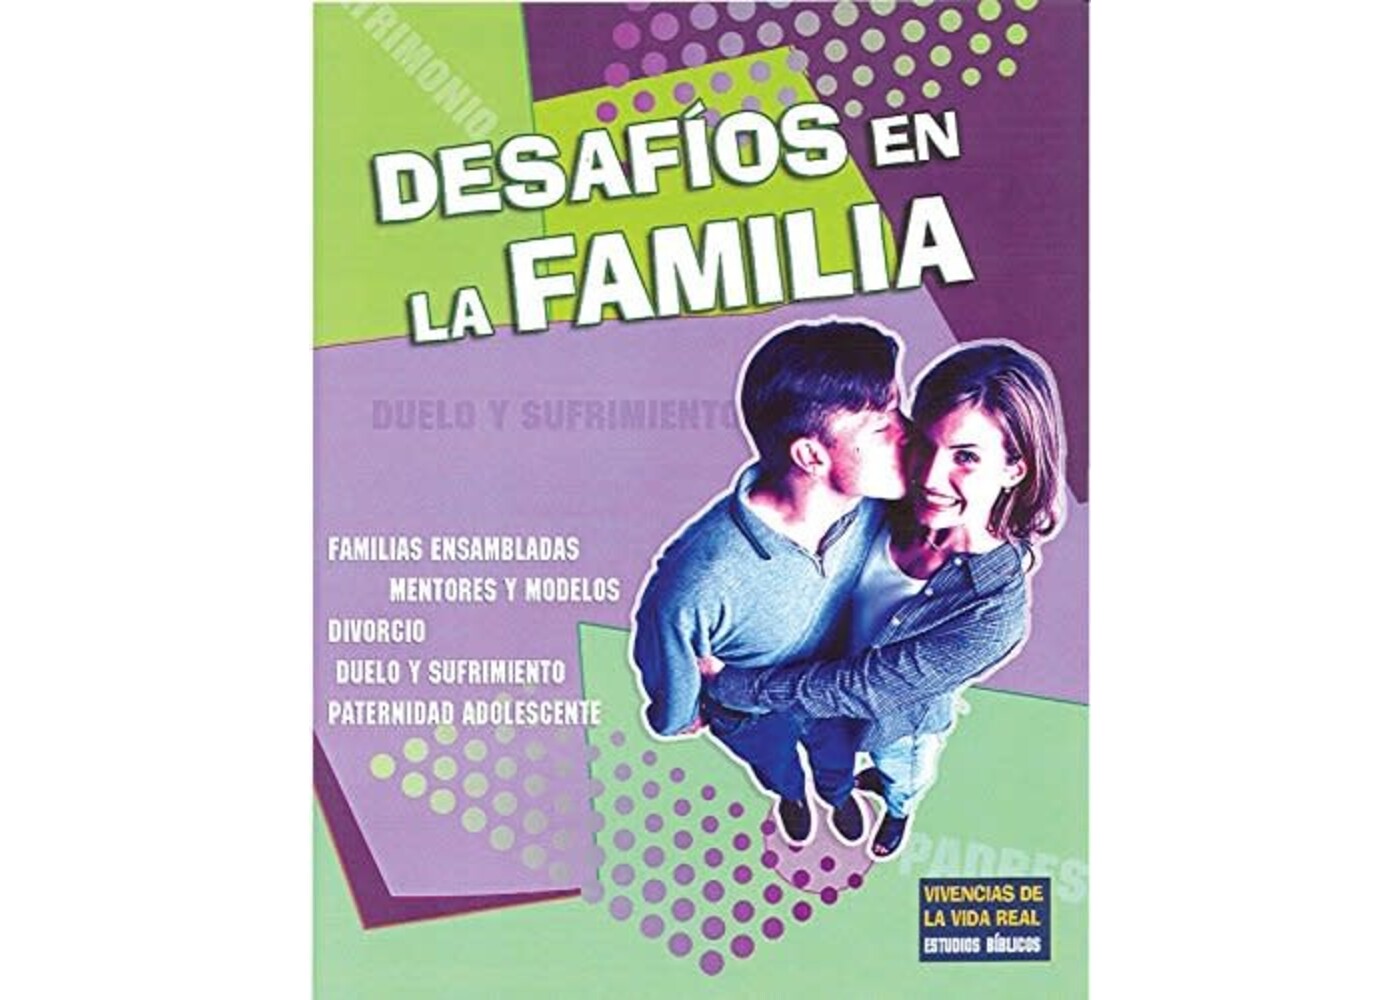 CONCORDIA PUBLISHING HOUSE DESAFIOS EN LA FAMILIA